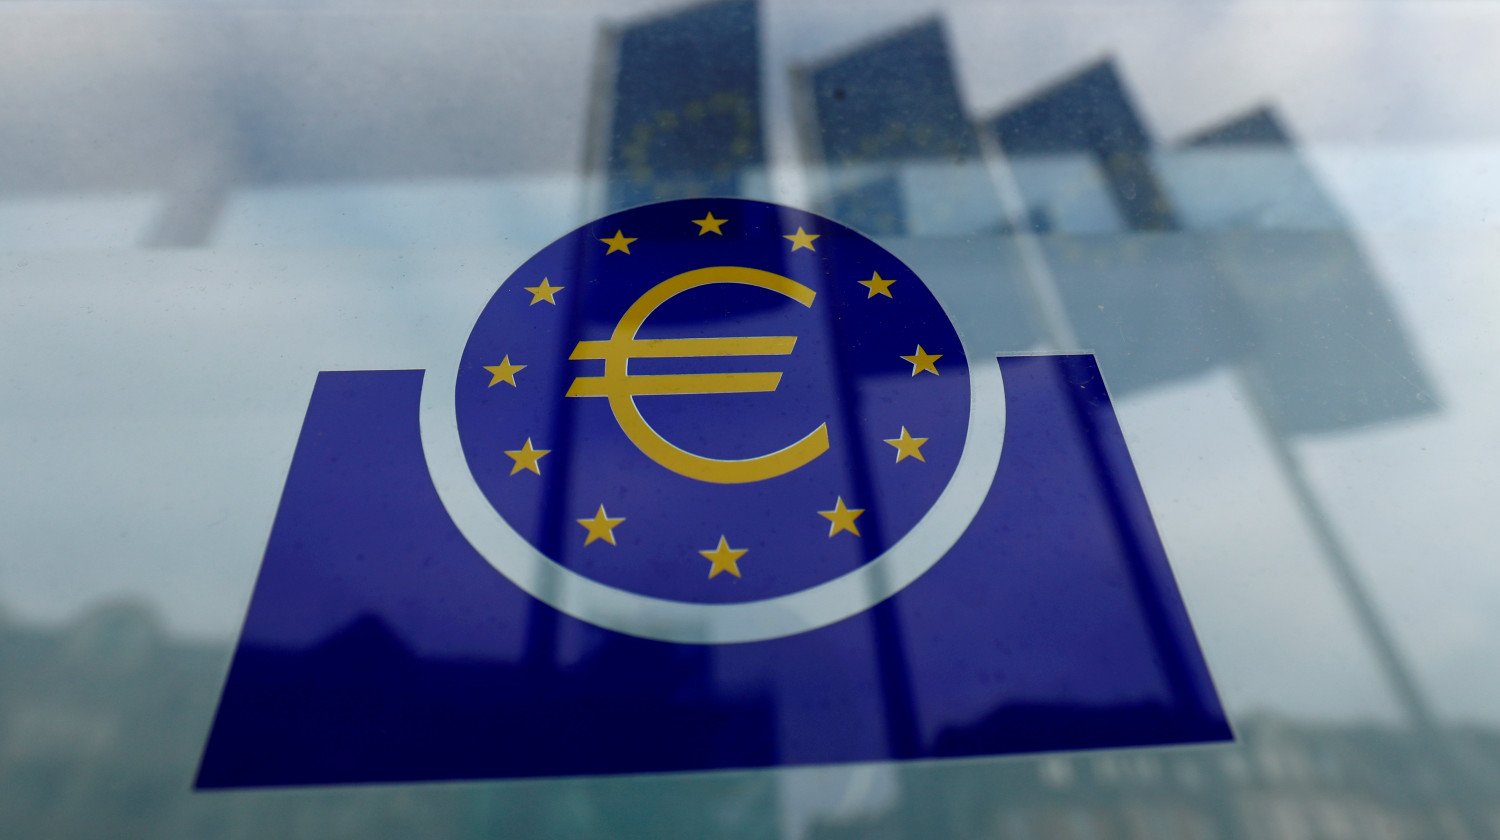 El BCE reducirá el ritmo de las compras del PEPP por debajo de trimestres anteriores